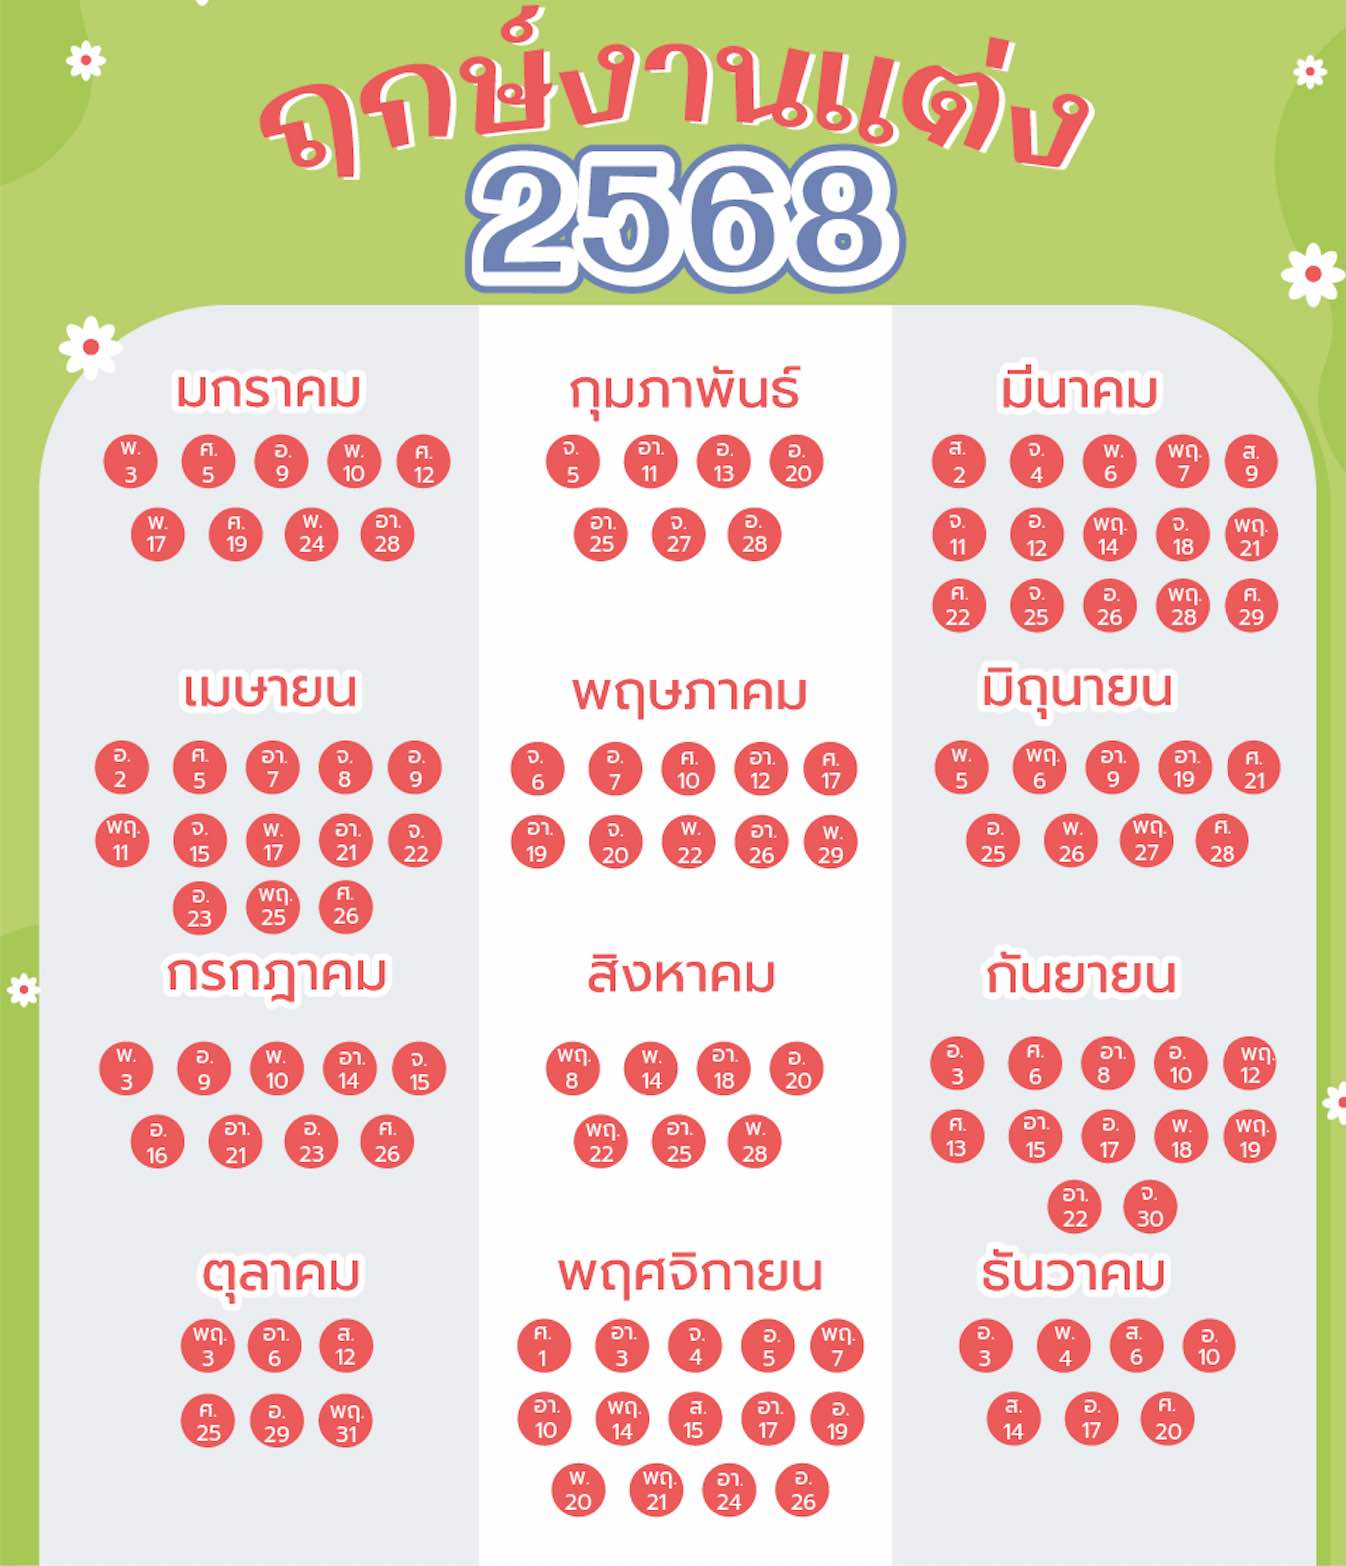 ฤกษ์แต่งงาน 2567 ทุกเดือนตามปฏิทินไทย, เทรนด์ชุดเจ้าสาว 2024, แต่งงานวันไหนดีสุด 2025, แต่งงานวันไหนดีสุด 2024, ฤกษ์แต่งงาน 2567, ฤกษ์แต่งงาน 2024, ฤกษ์แต่งงาน 2568